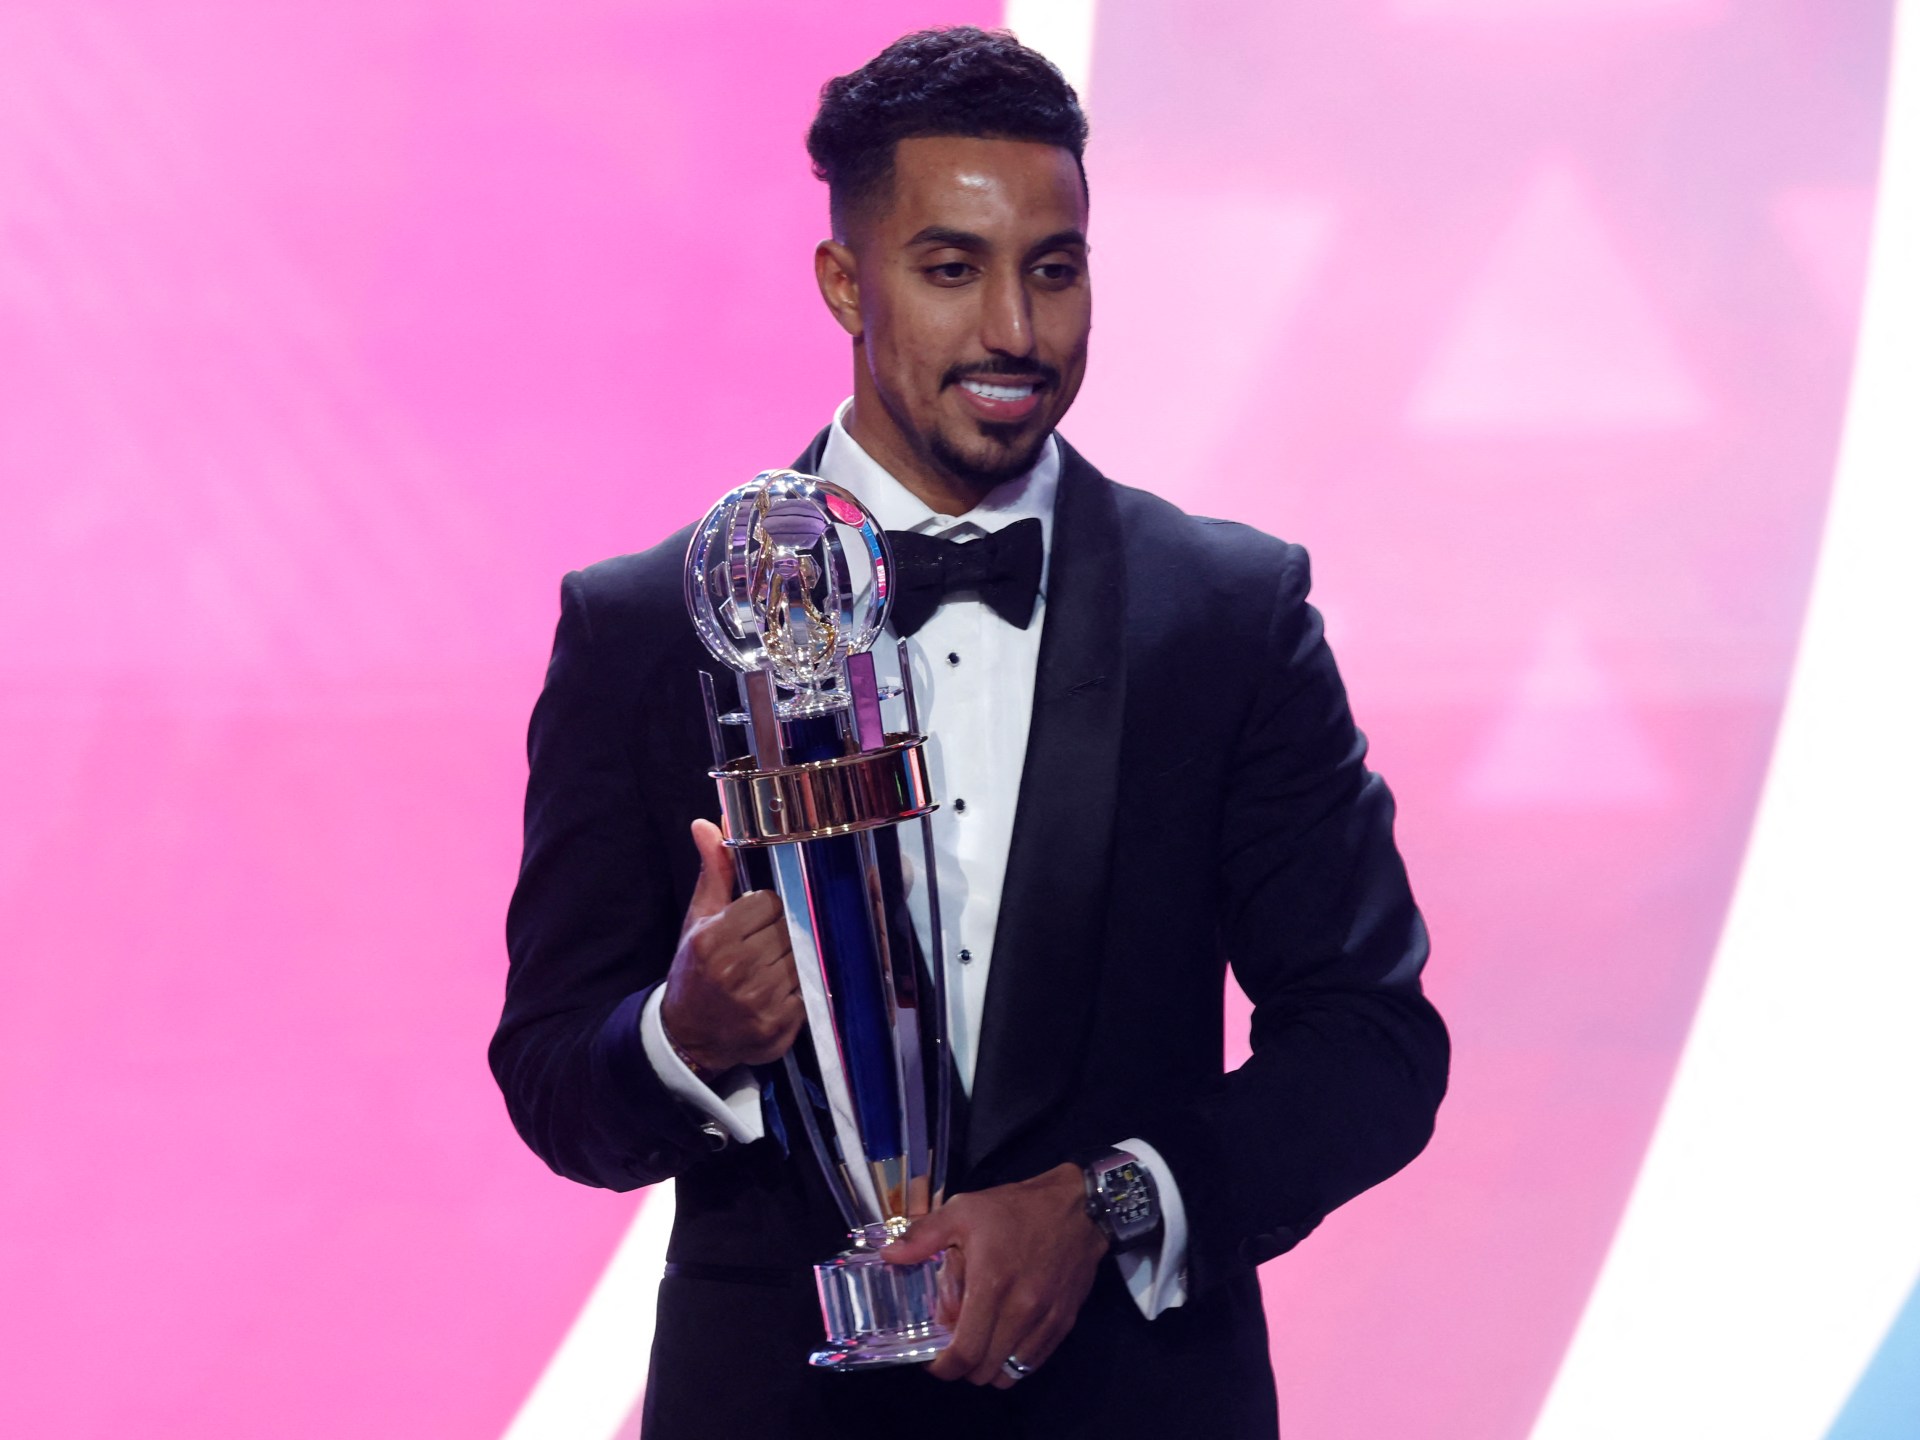 السعودي الدوسري يفوز بجائزة أفضل لاعب في آسيا | رياضة – البوكس نيوز